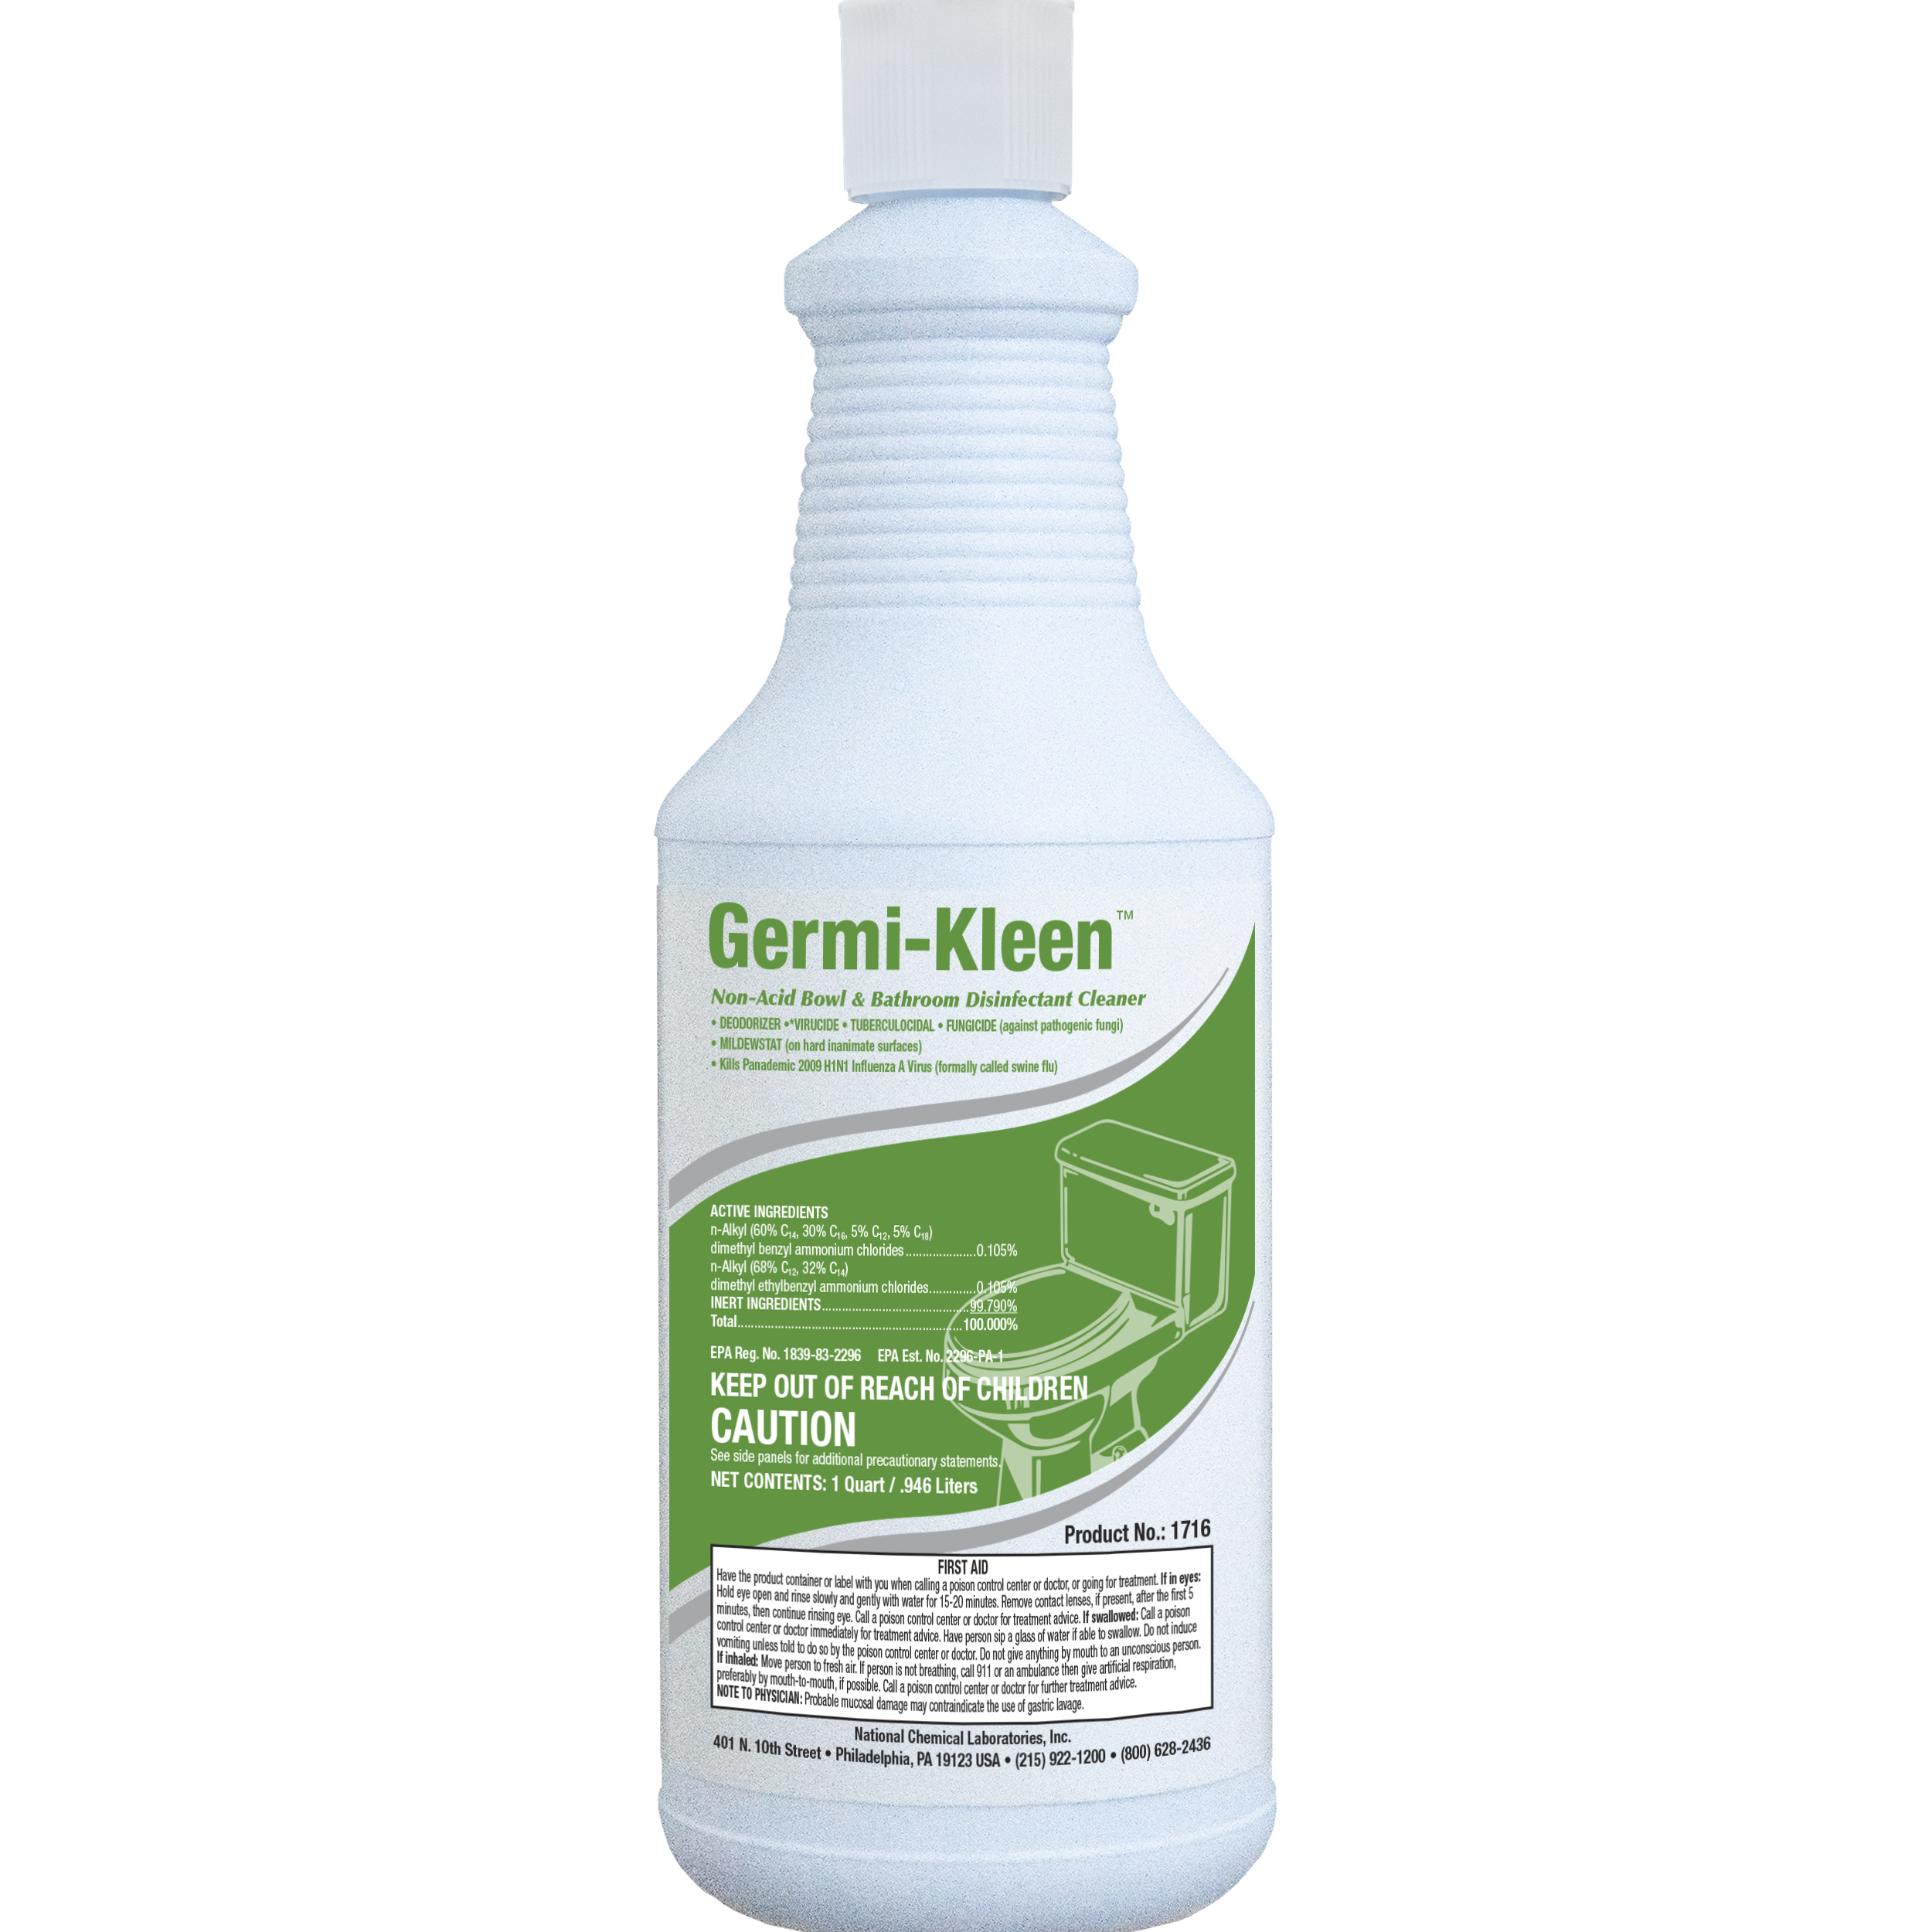  GERMI-KLEEN Non-Acid Bowl & Bathroom Disinfectant Cleaner 12/32 oz (1 Qt.) Case (NCL1716-45) 